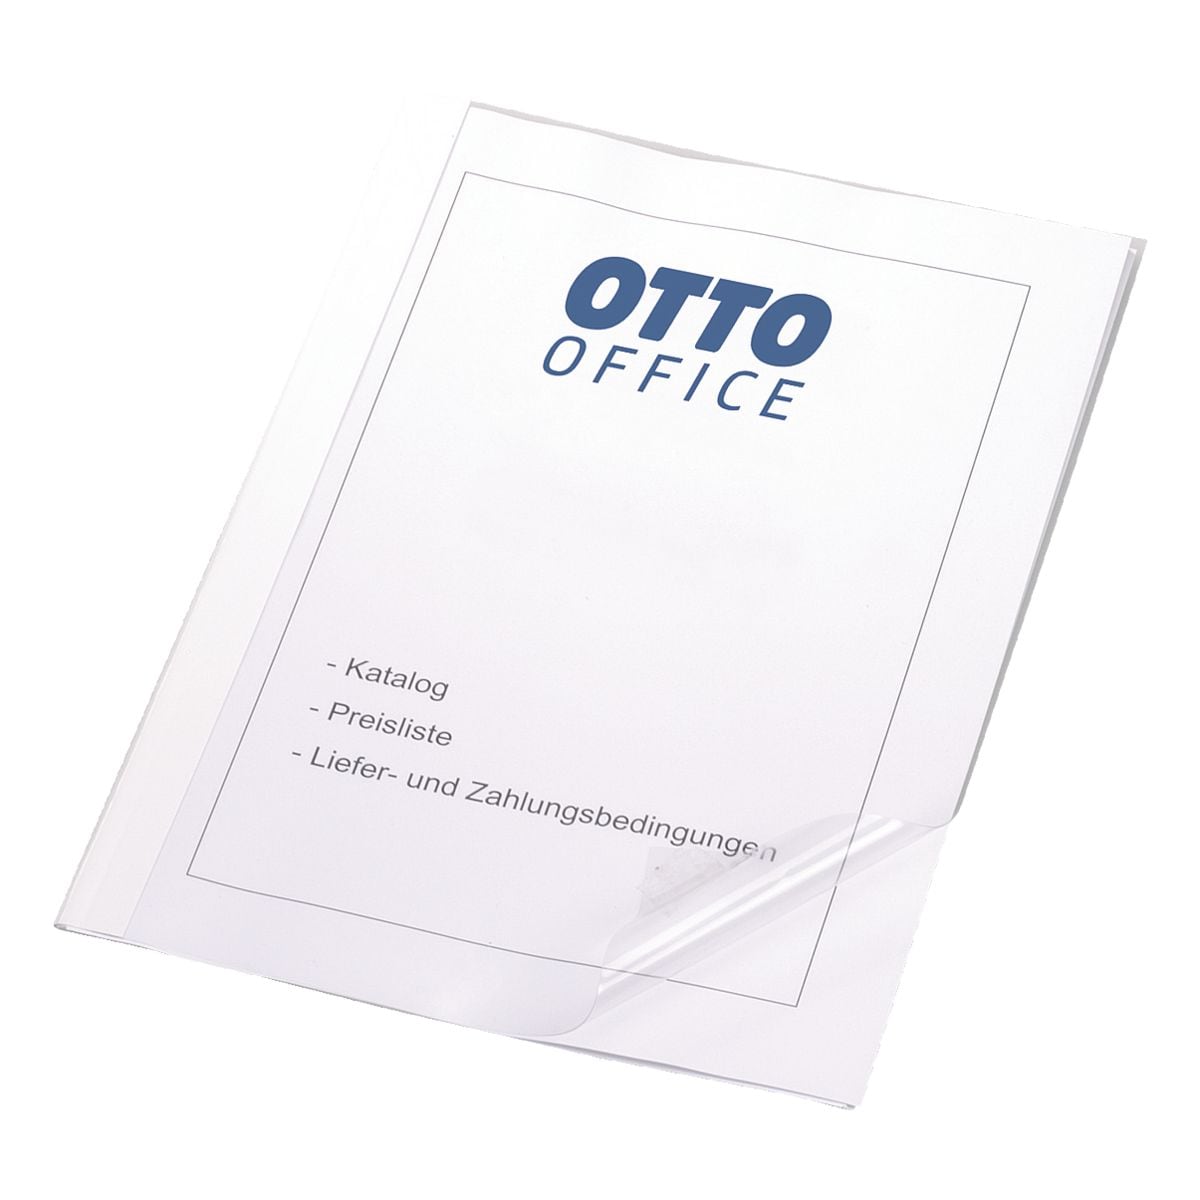 OTTO Office 100 couvertures pour thermoreliure jusqu' 15 feuilles